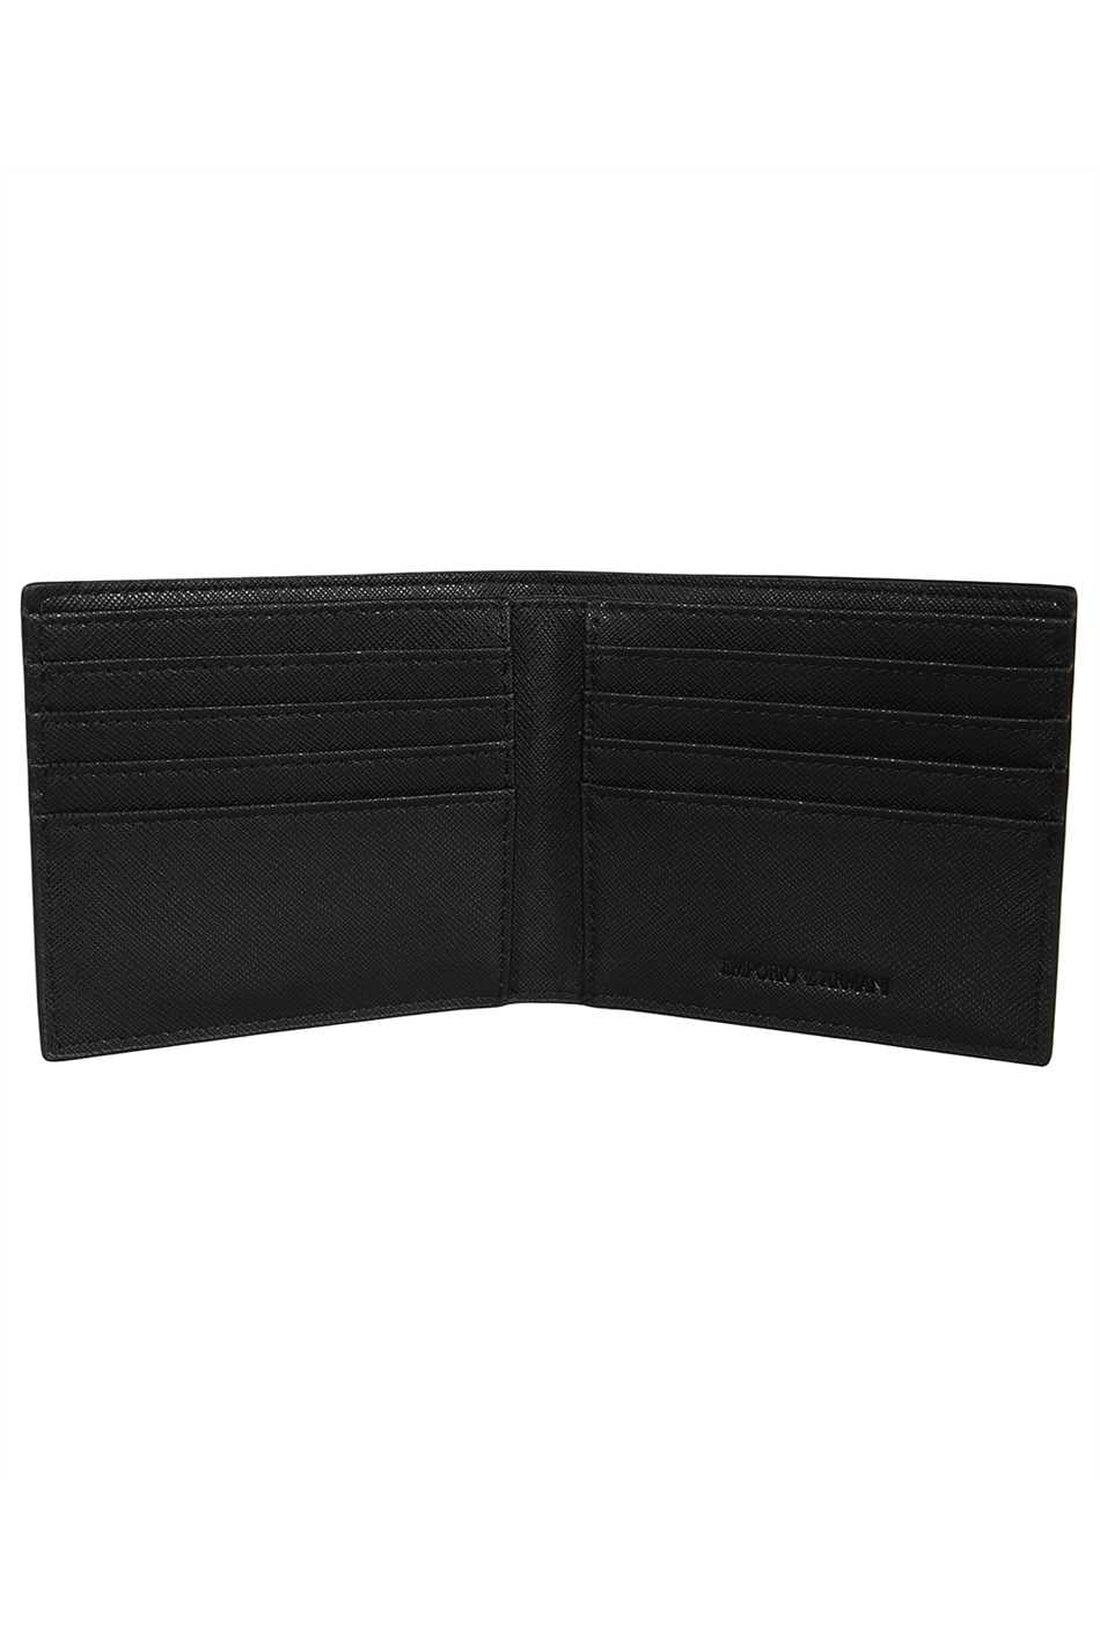 Piralo-OUTLET-SALE-Vegan leather wallet-ARCHIVIST